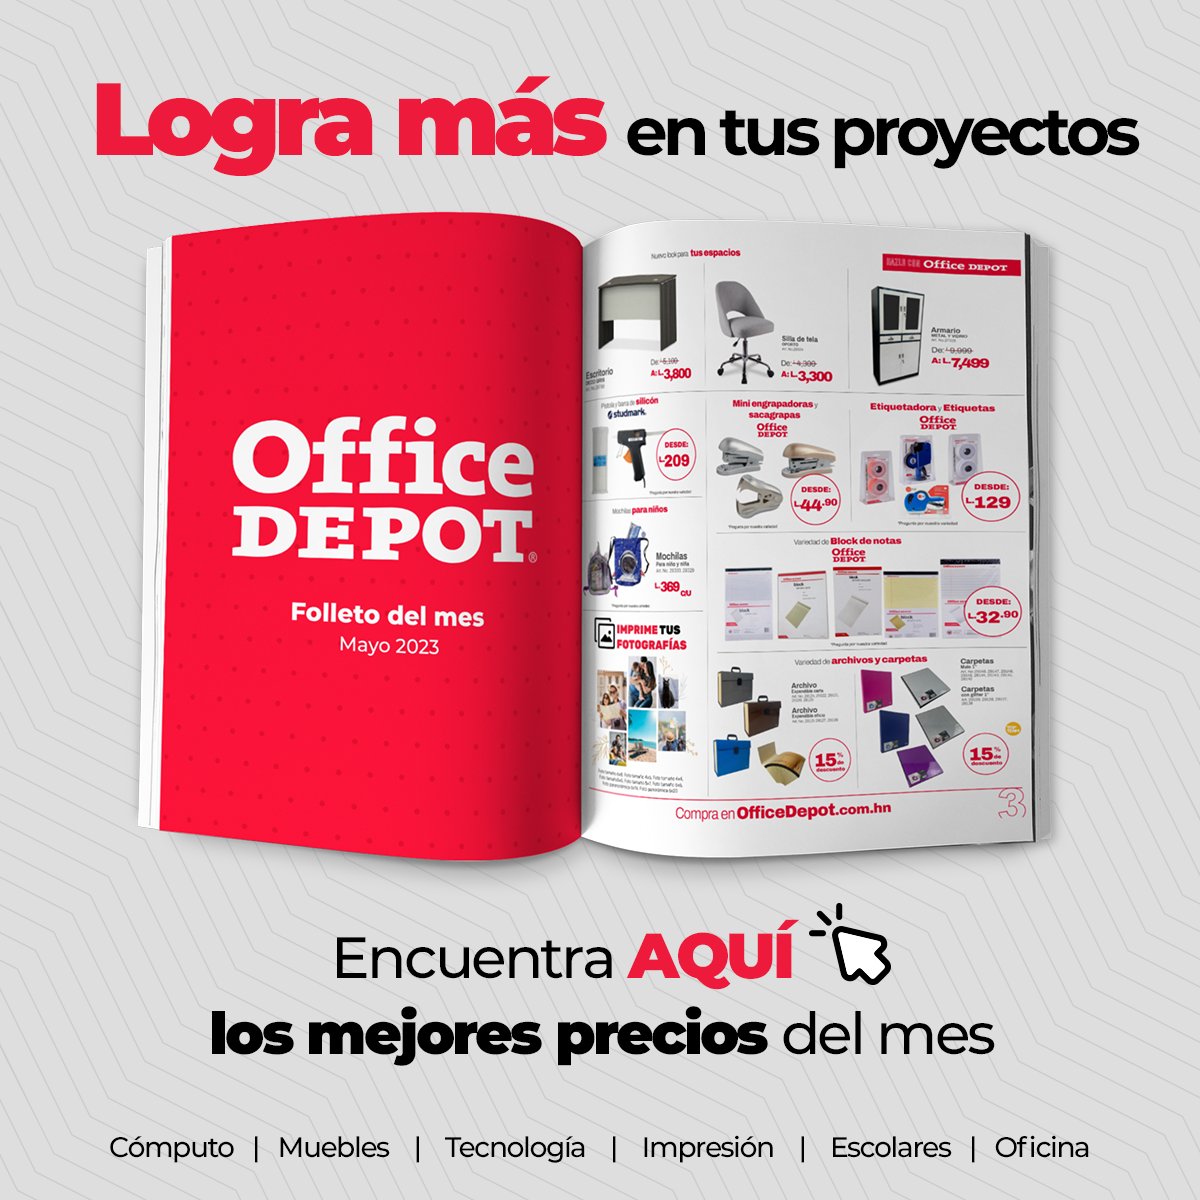 OfficeDepot Honduras (@OfficeDepotHn) / Twitter